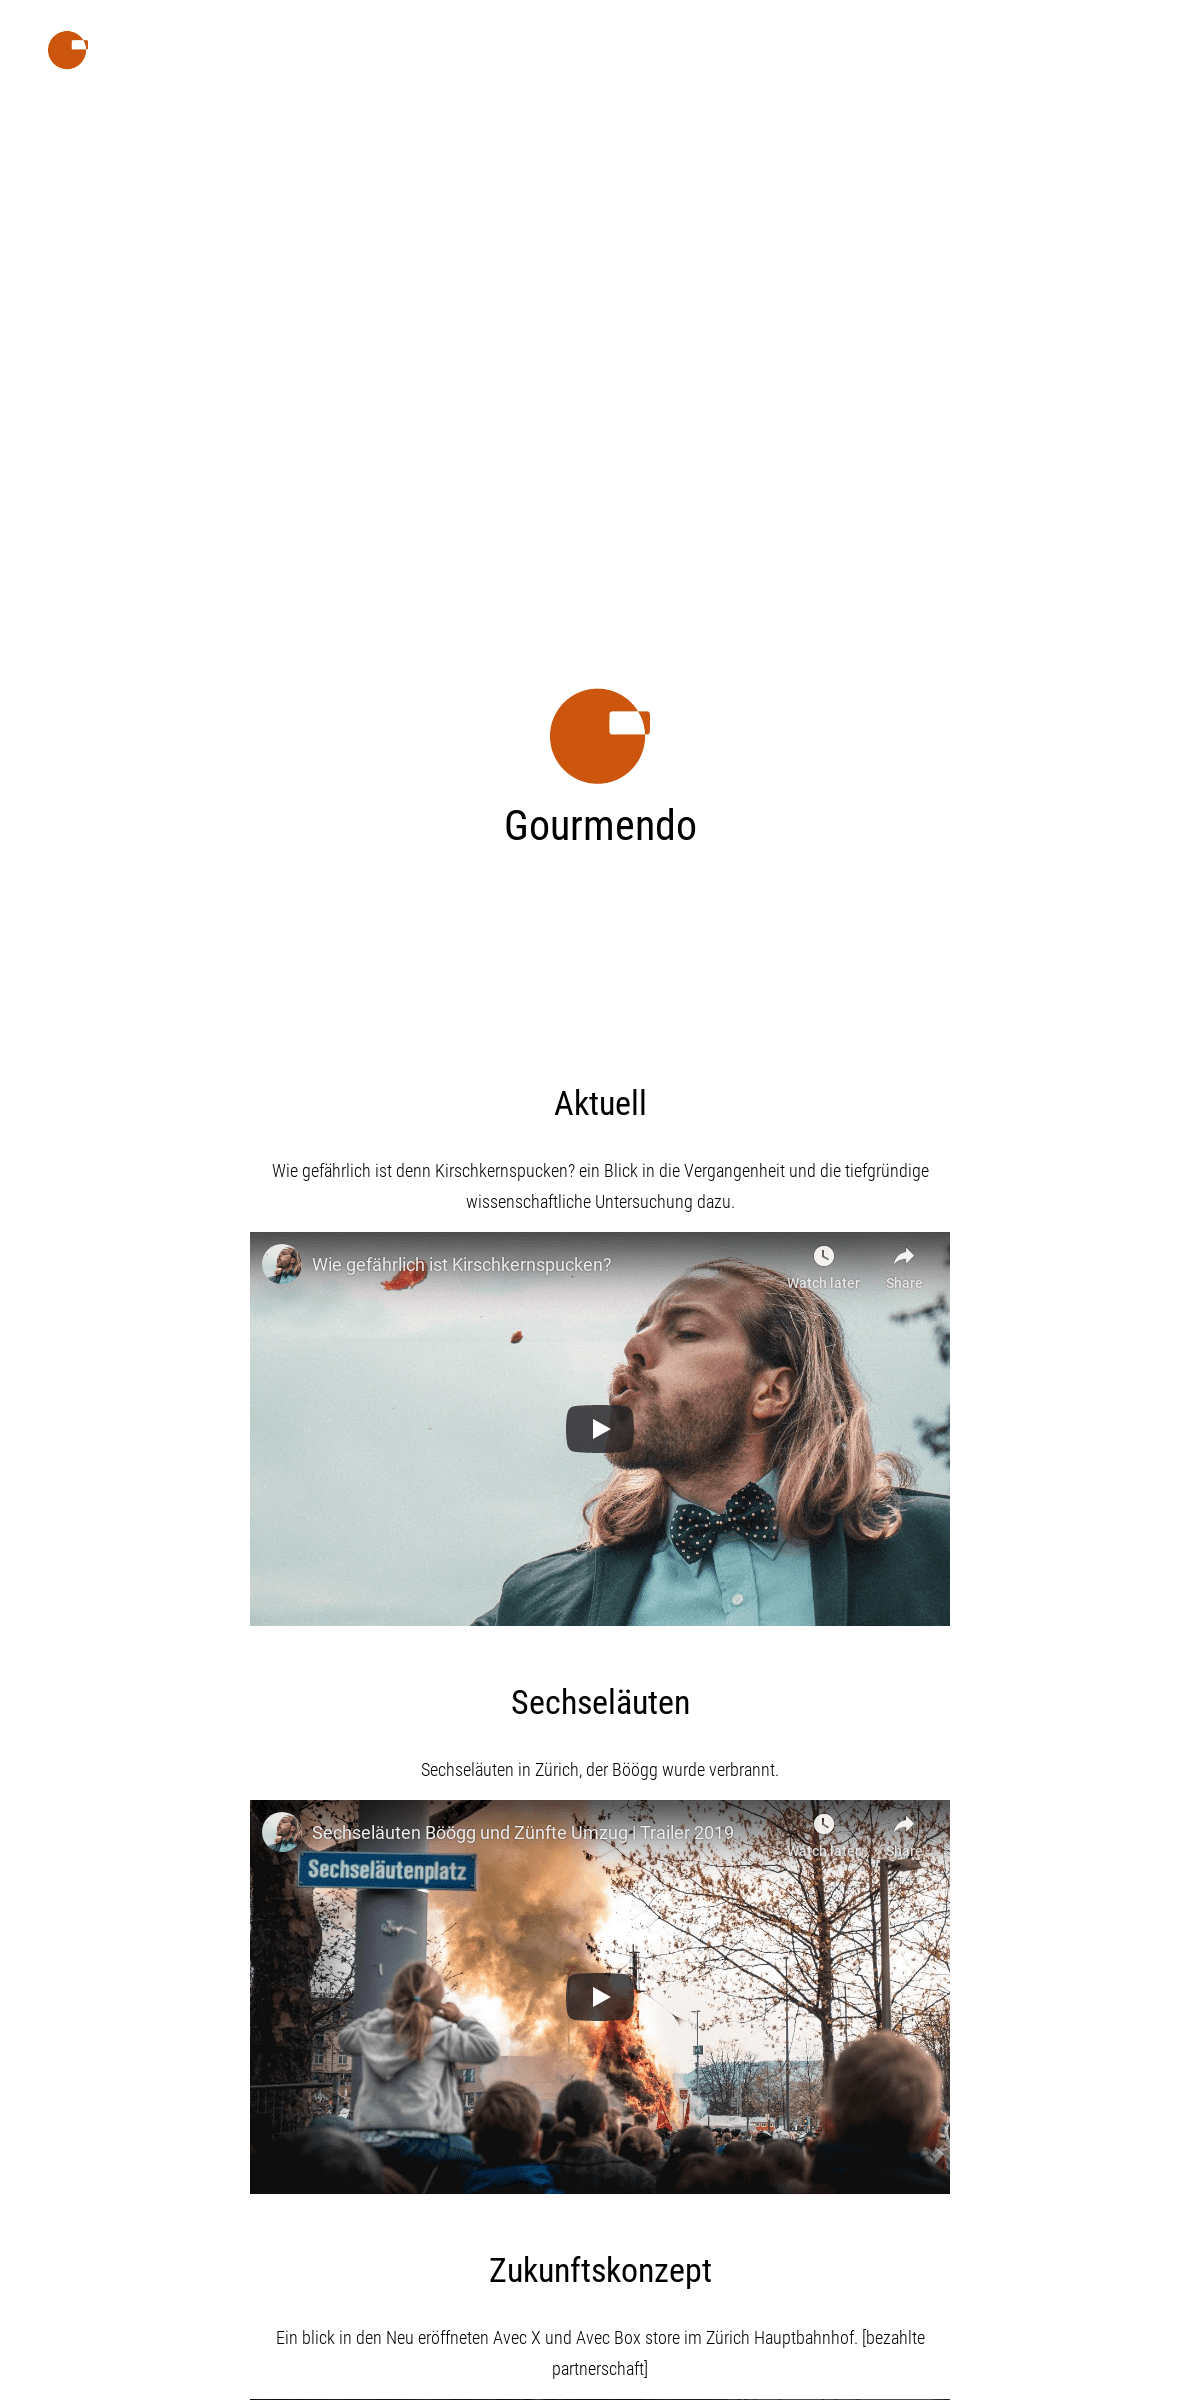 A complete backup of gourmendo.com